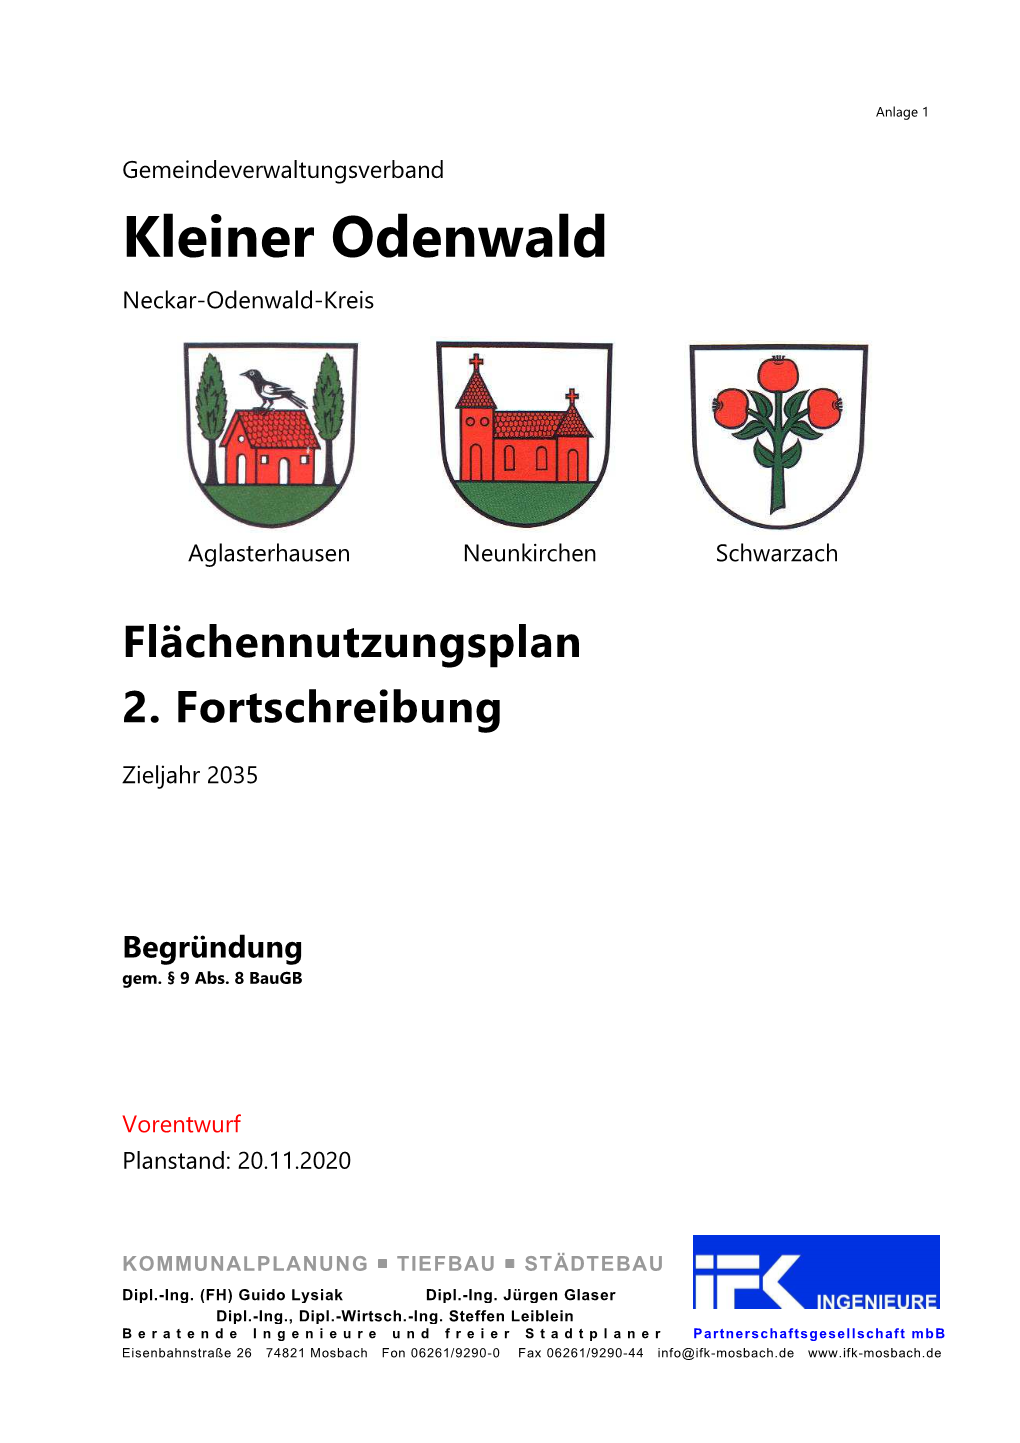 Kleiner Odenwald Neckar-Odenwald-Kreis